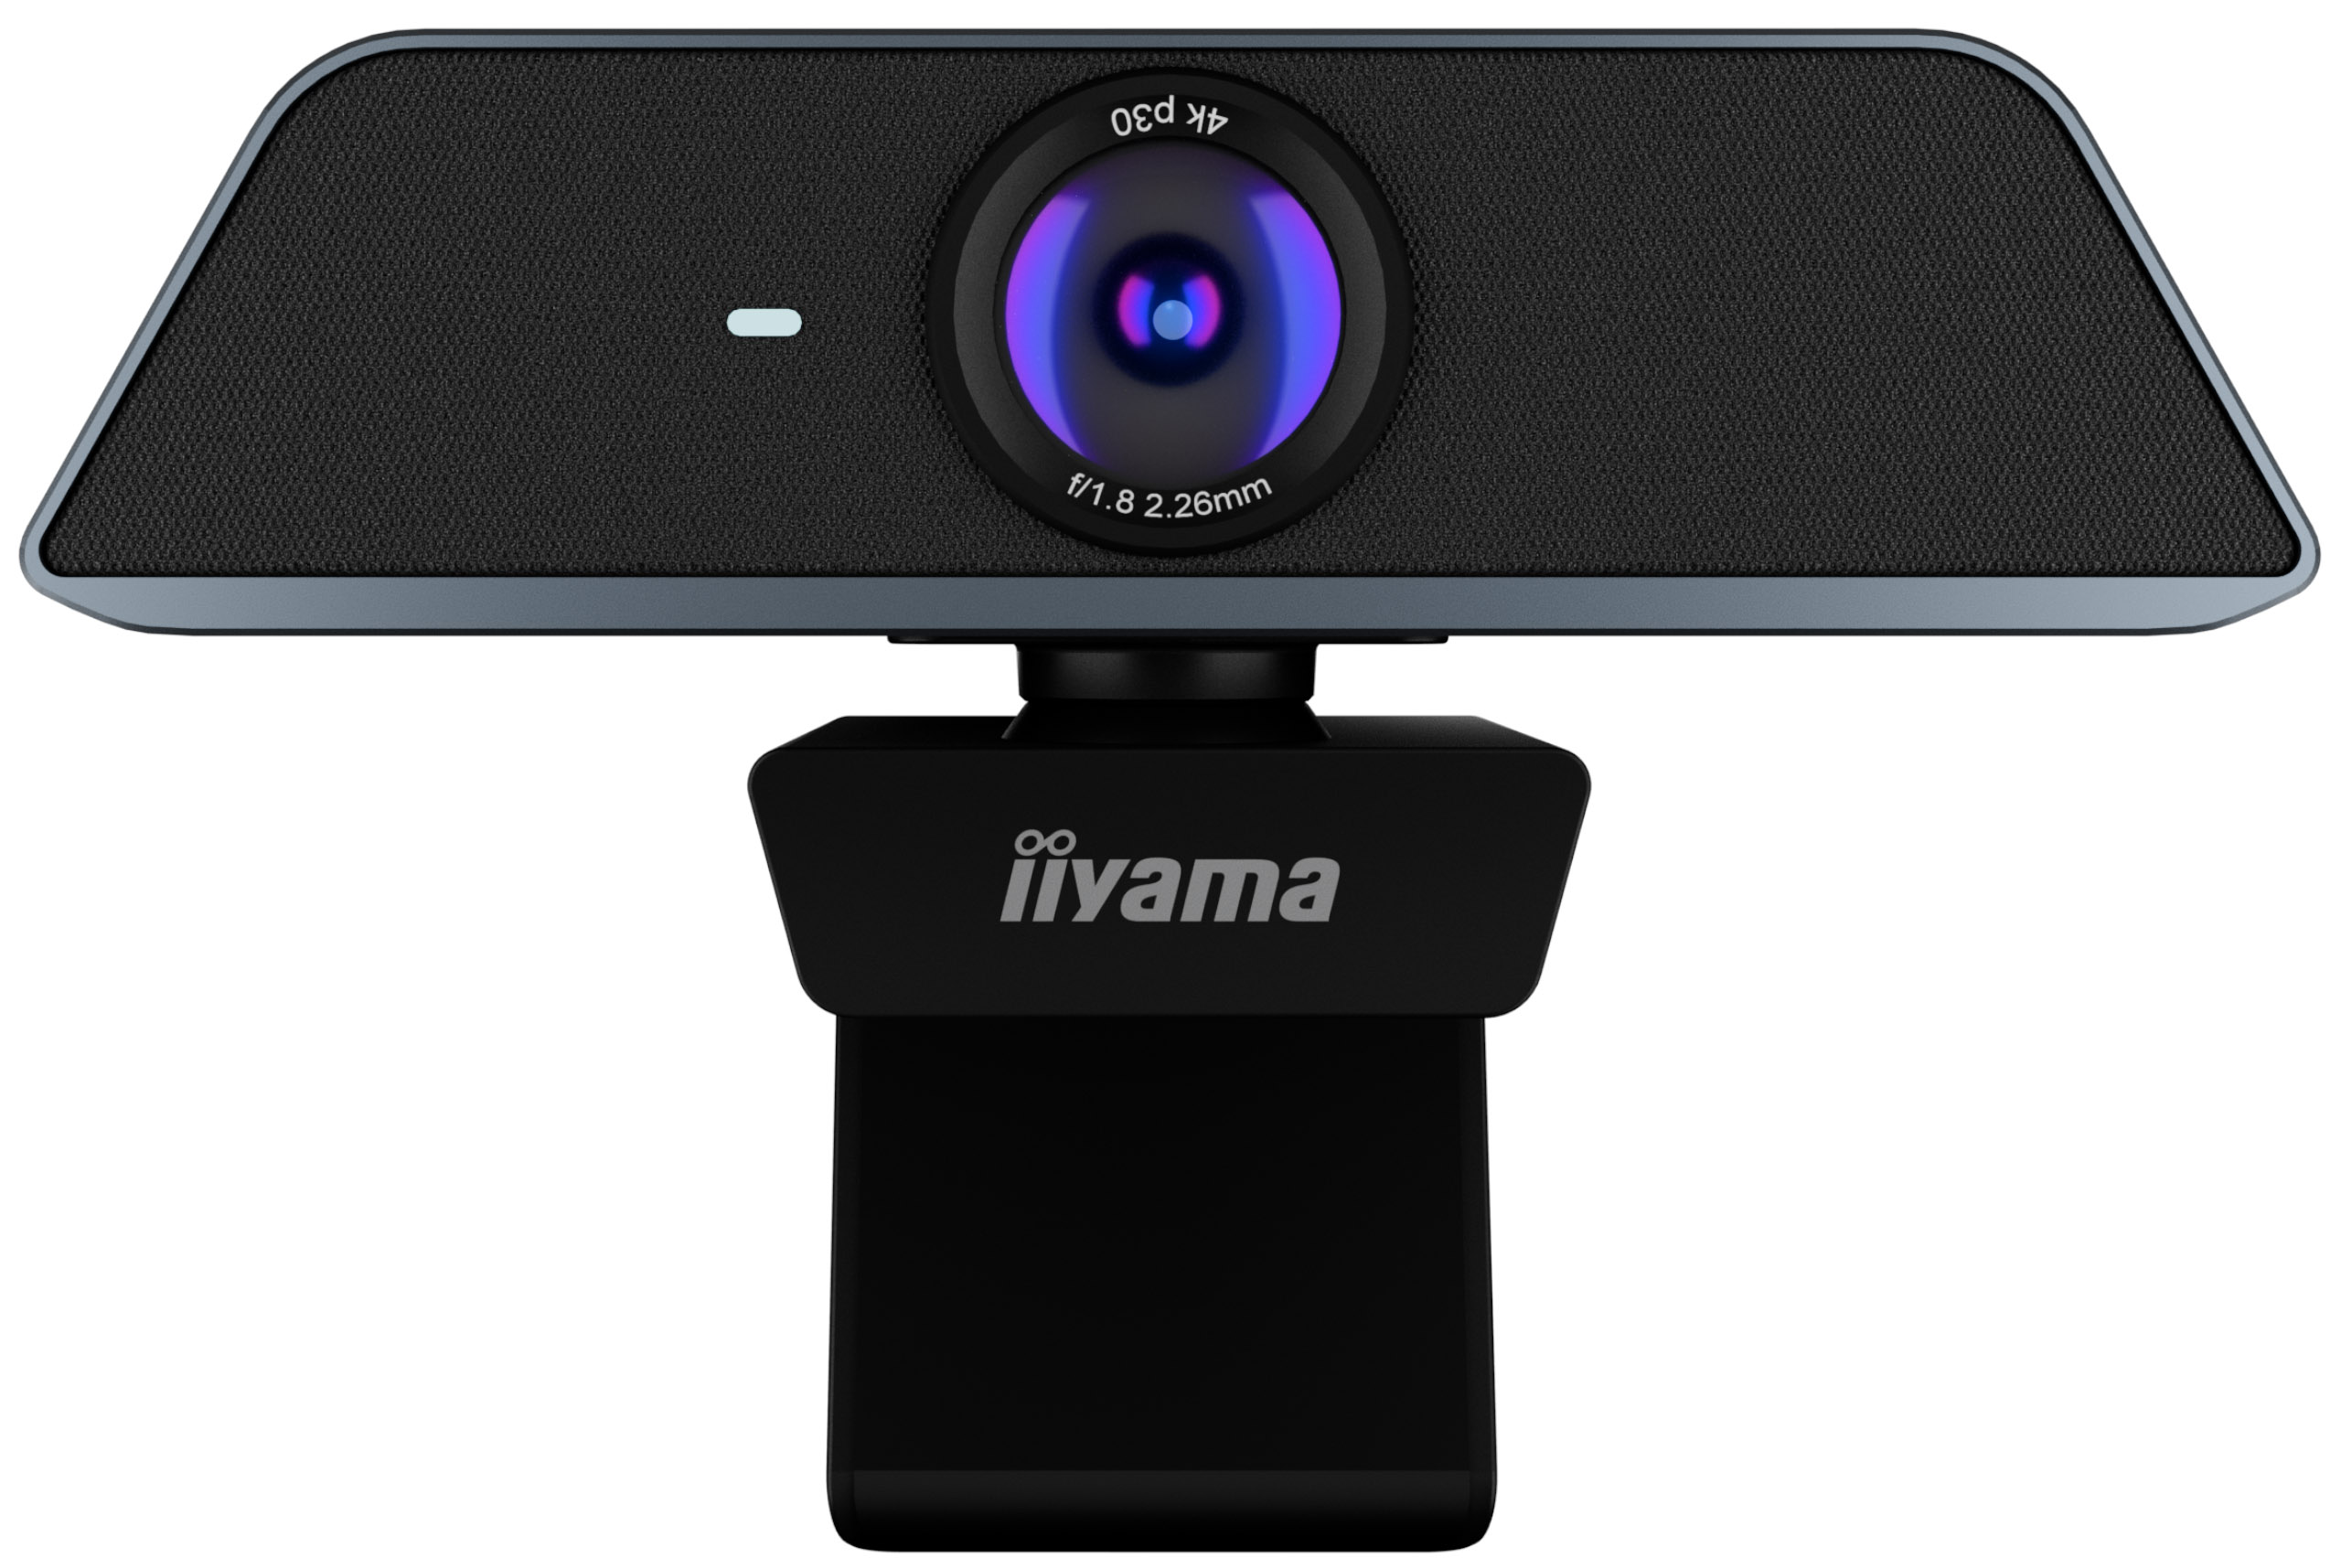 UC CAM120UL-1 - Konferenz-Webcam mit 4K-Auflösung, 120° Sichtfeld und Auto-Framing